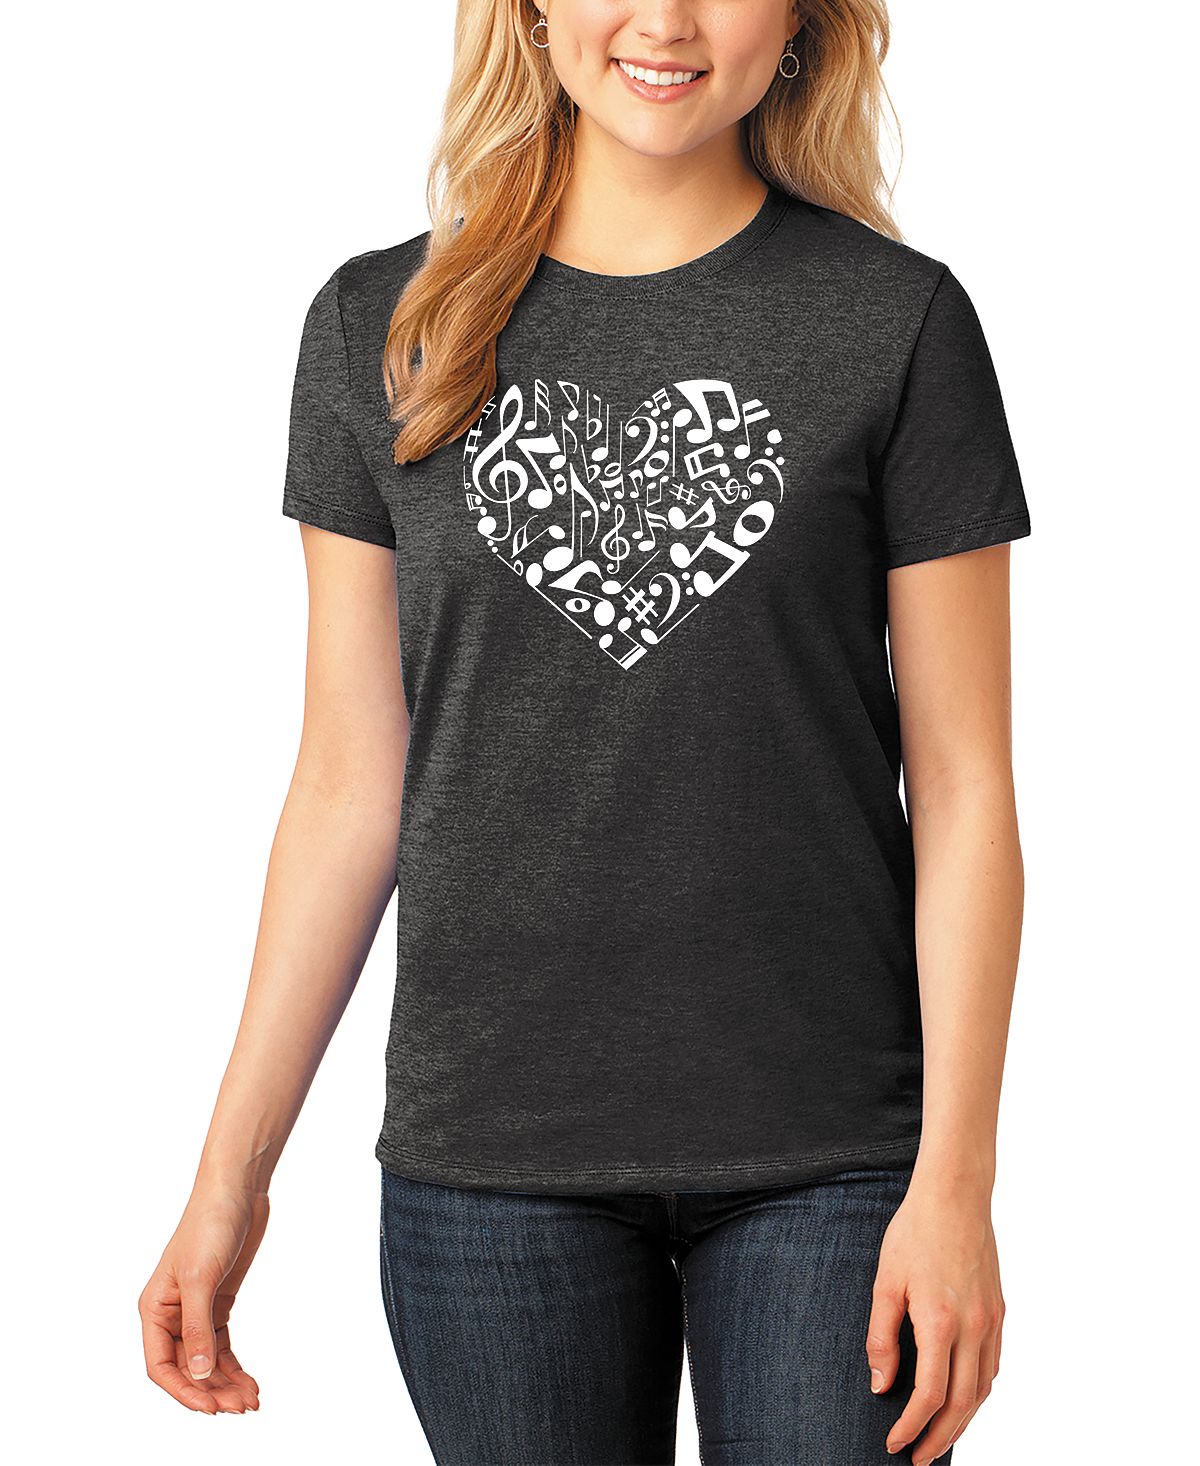 Женская футболка premium blend word art с нотами сердца LA Pop Art, черный